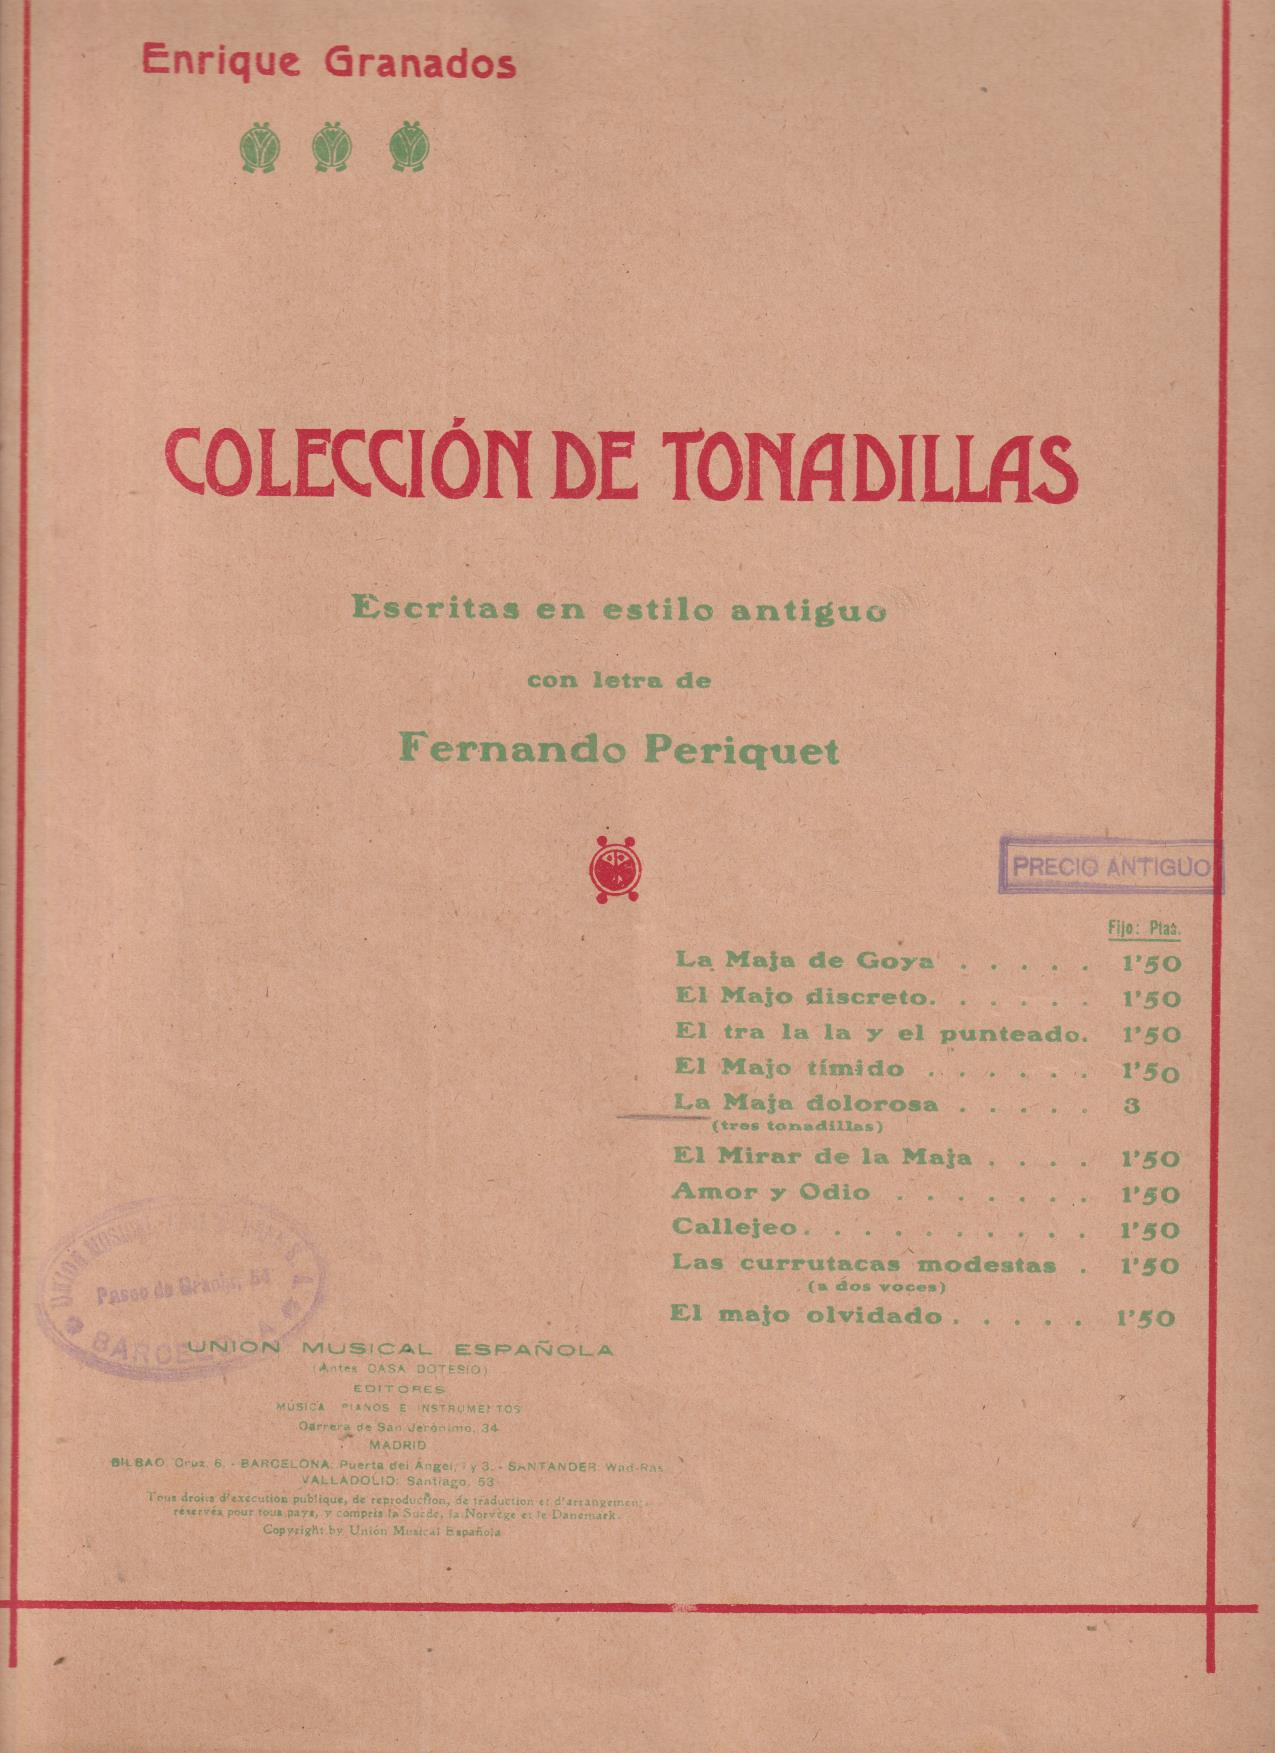 Enrique Granados. Colección de Tonadillas. Escritas en Estilo antiguo (35x25) 7 páginas